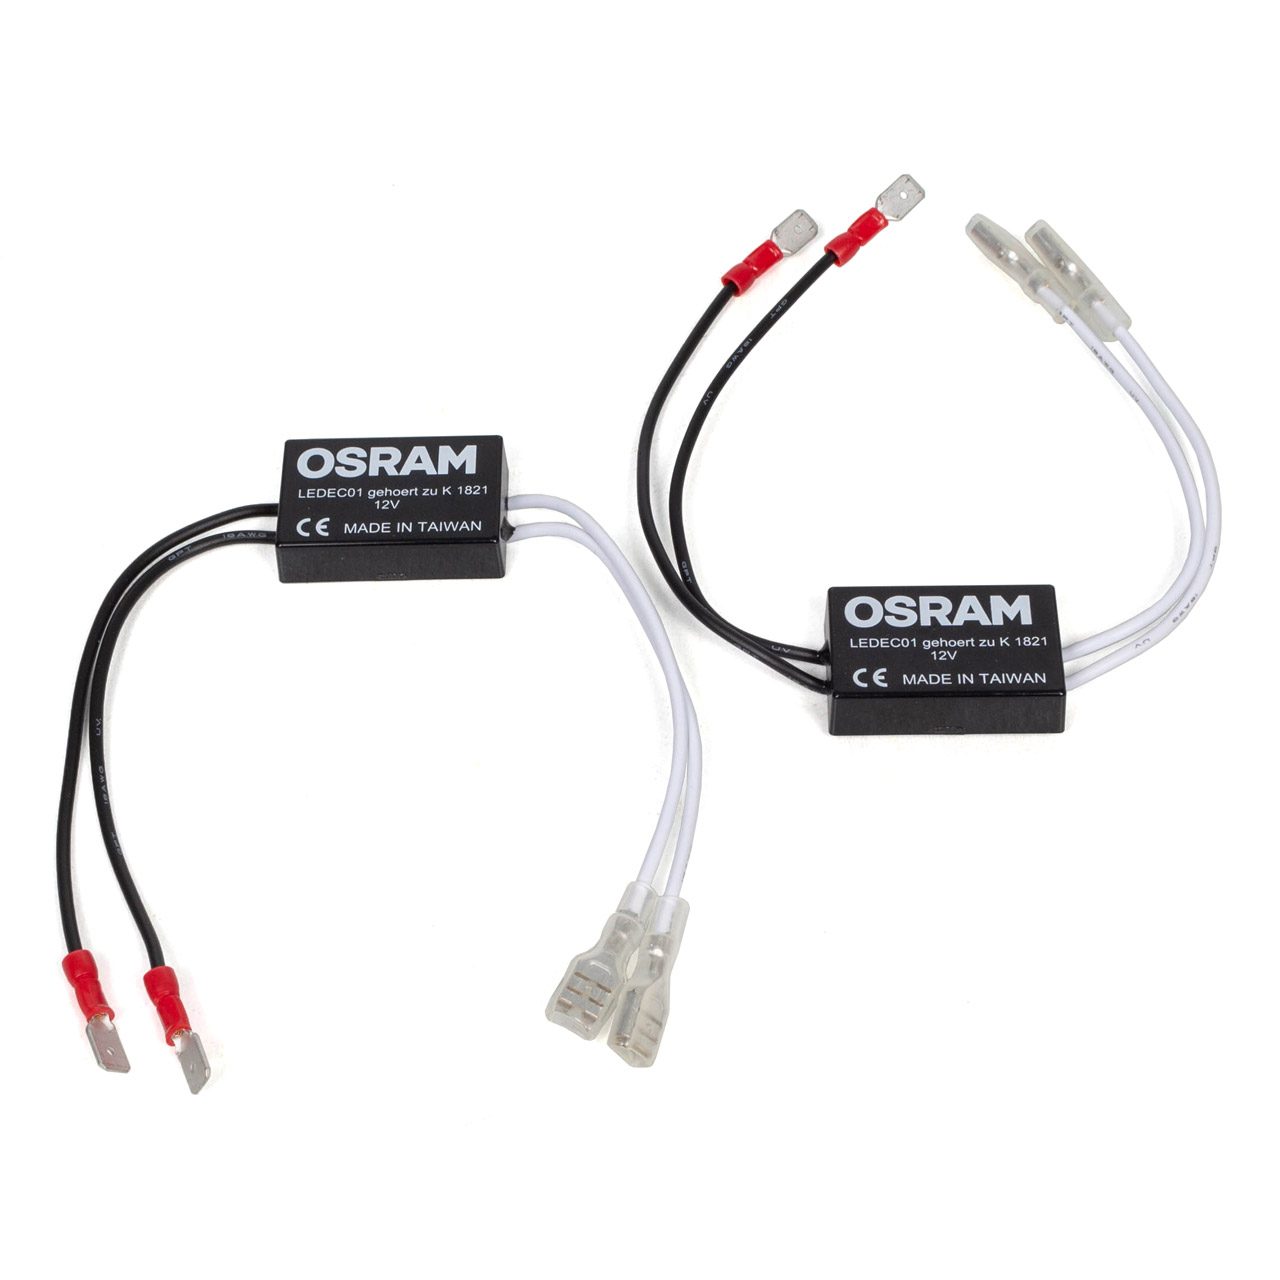 OSRAM sonstige Autolampen / Leuchten-Zubehör - LEDEC01-2HFB - ws